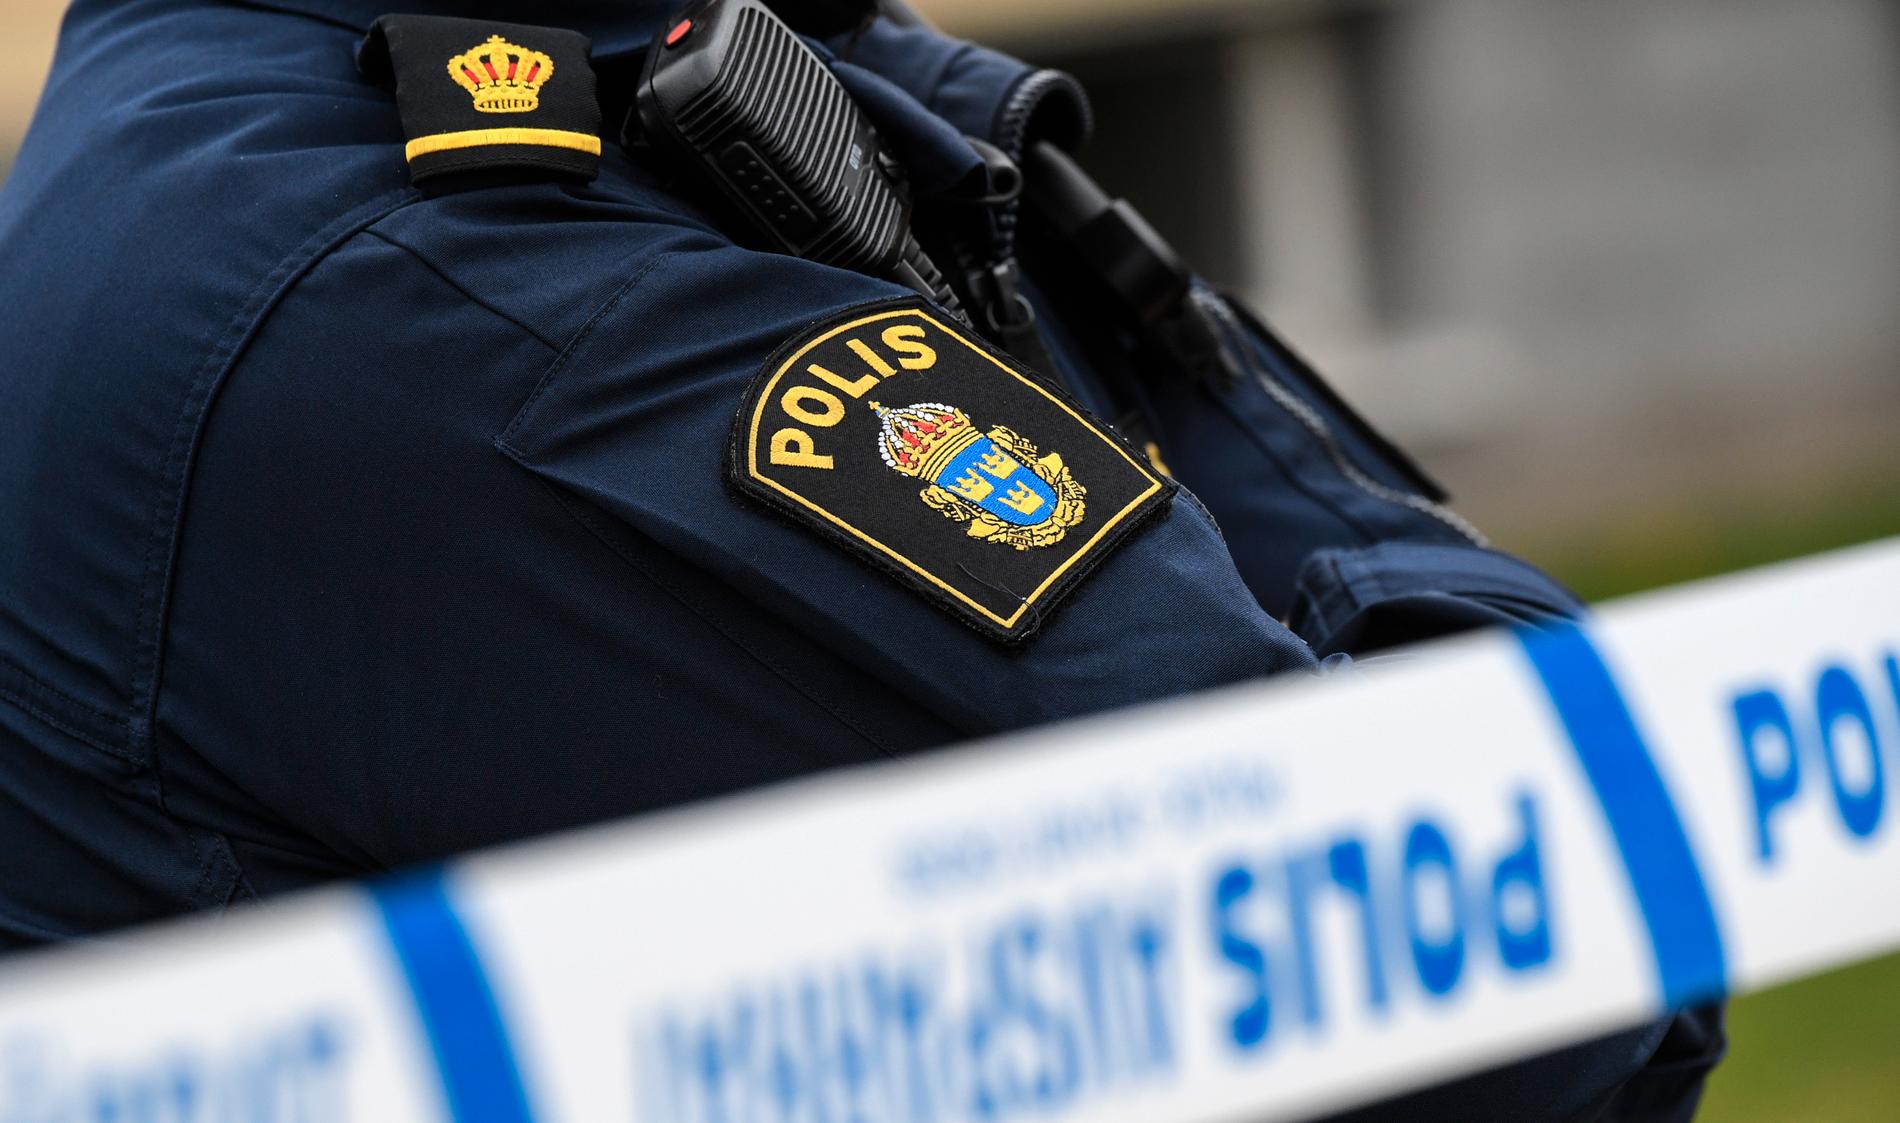 En man i 30-årsåldern dog efter skottlossning i Uppsala. Arkivbild.